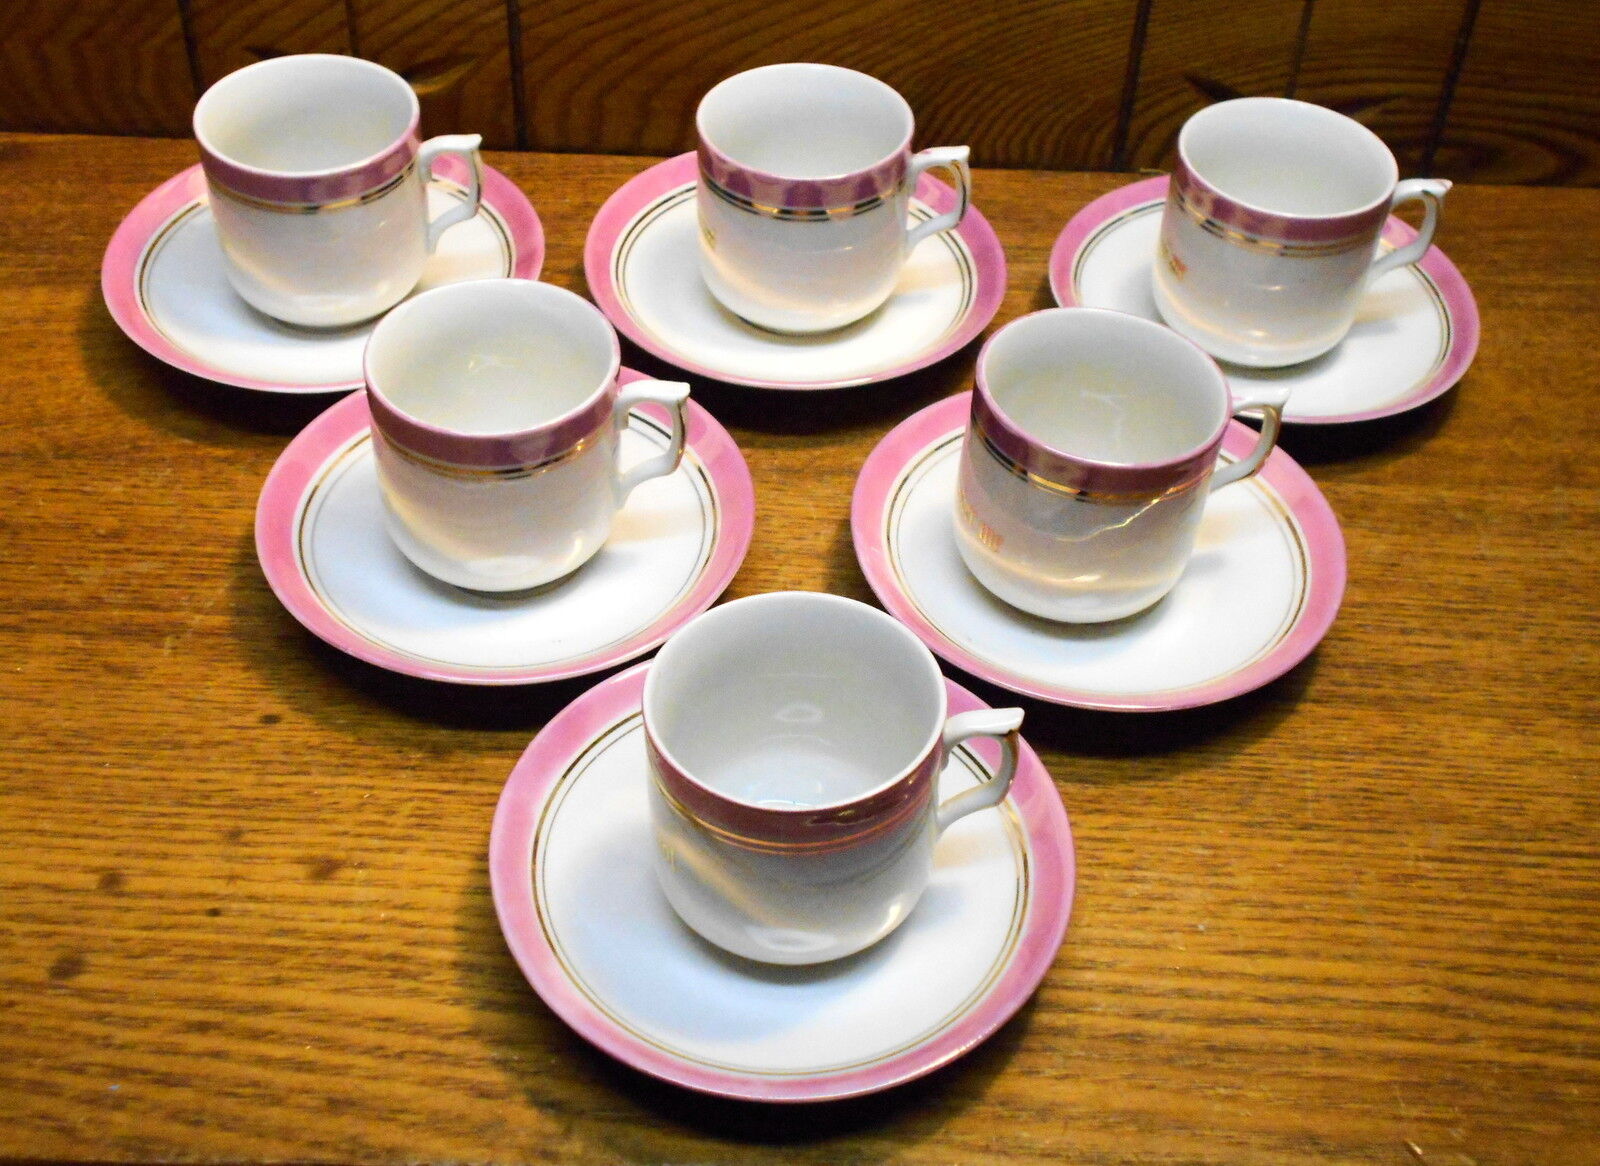 6 Old Porcelain Demitasse Cup & Saucer Sets - Germany - Think Of Me Remember Me